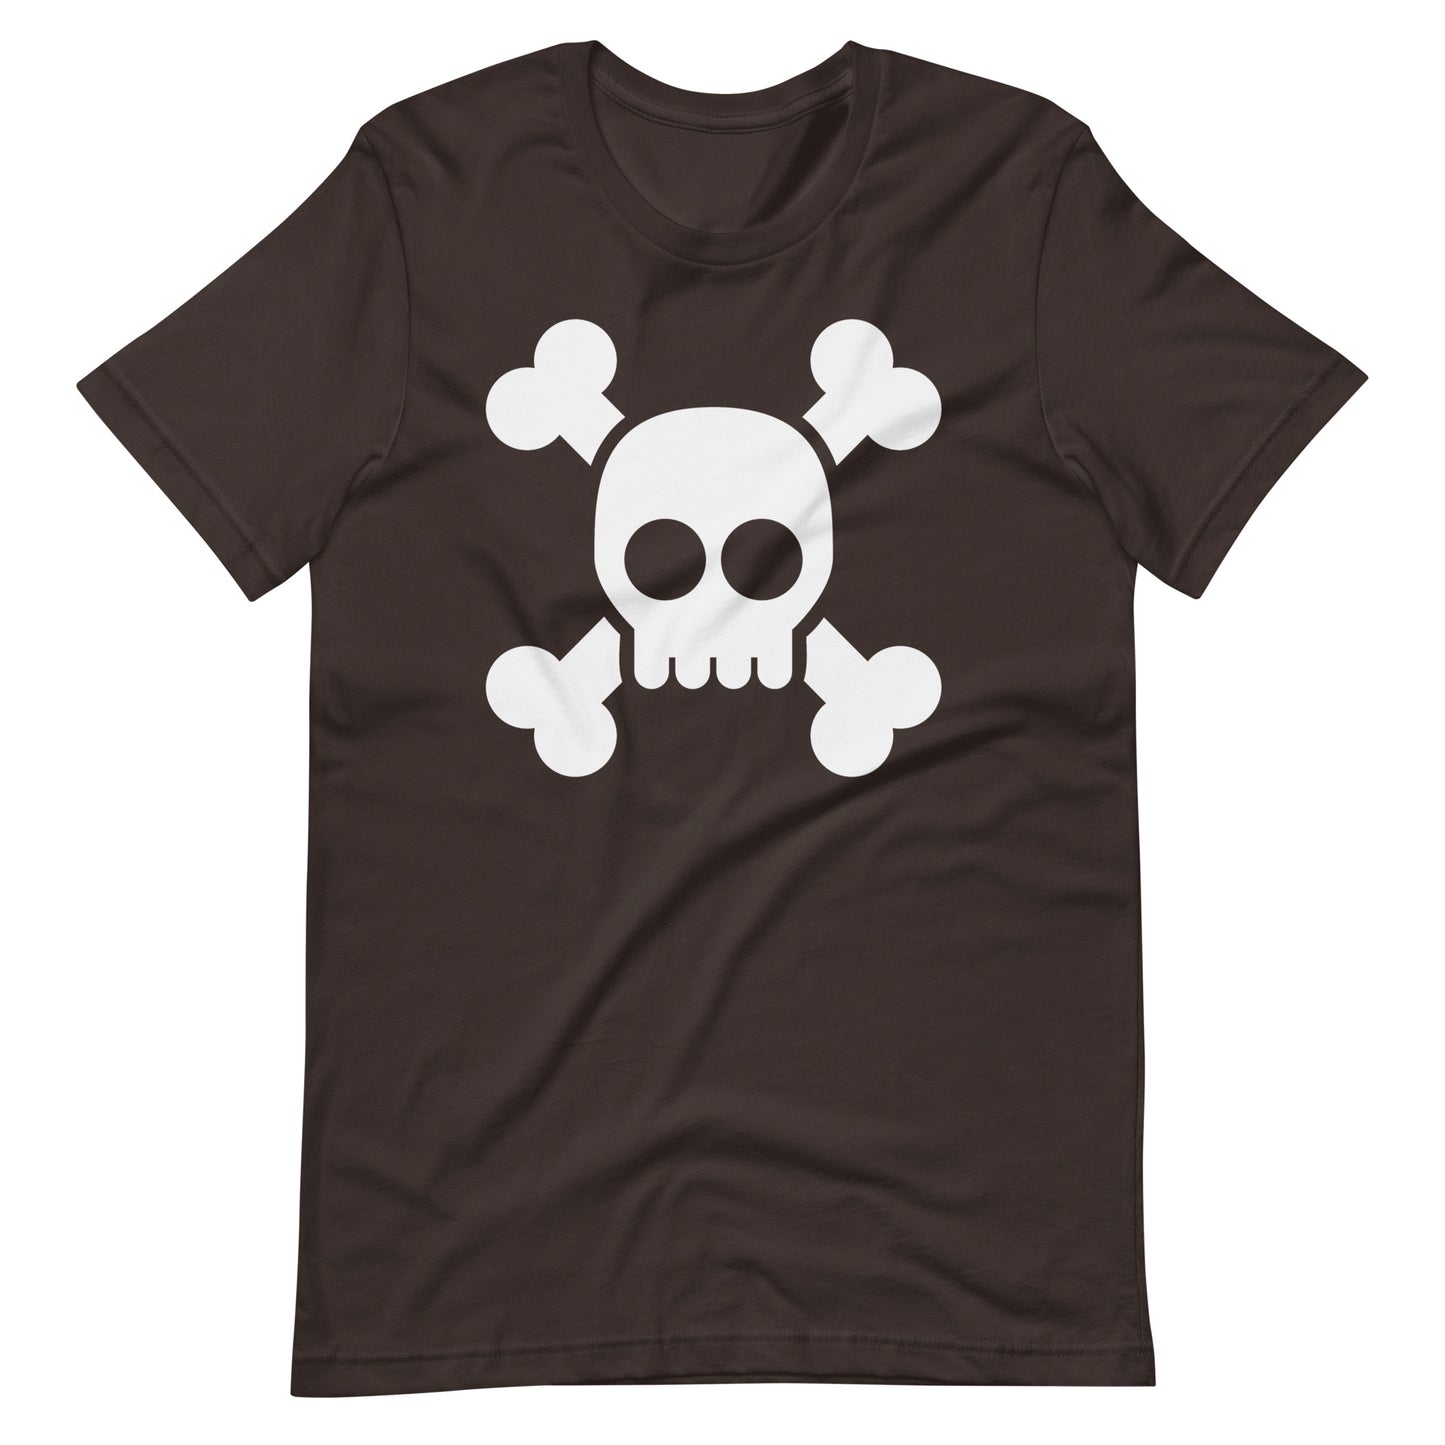 Pirate Symbol Graphic Shirt